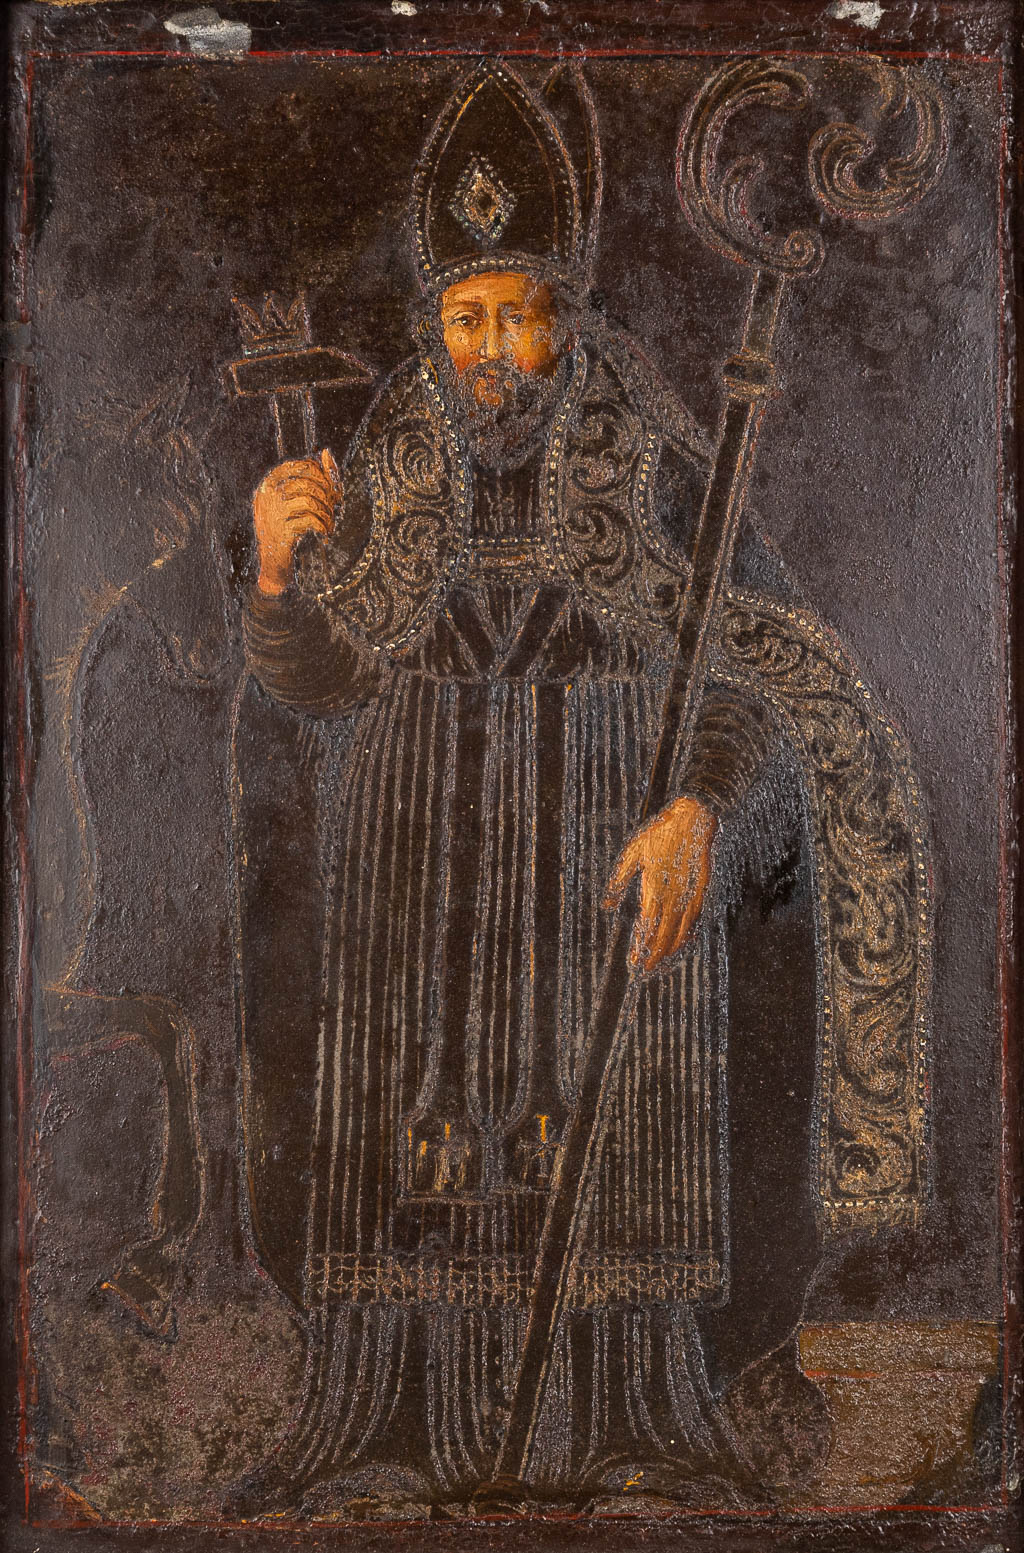 Heilige Eligius of Elooi, geschilderd op zink. Waarschijnlijk 18de eeuw. (W:24 x H:35 cm)